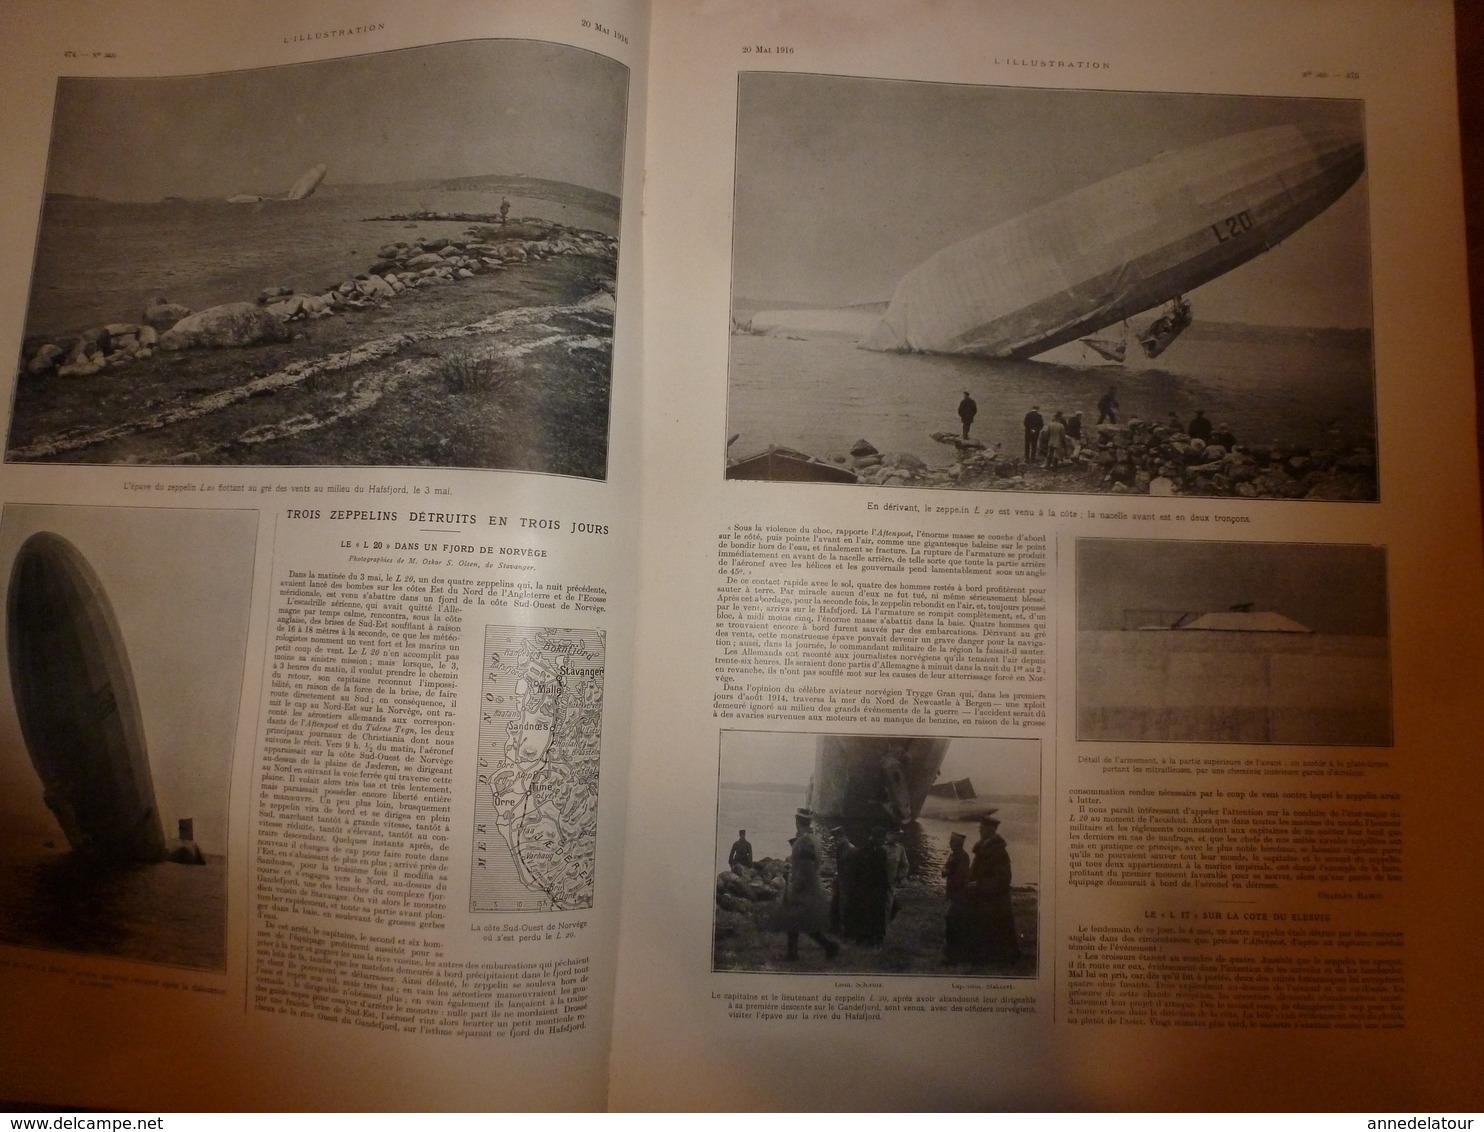 1916 L'ILLUSTRATION :3 Zeppelin abbatus;Le Grand Duc NICOLAS;Notre-Dame de Fourvières (Funérailles Primat des Gaules)etc